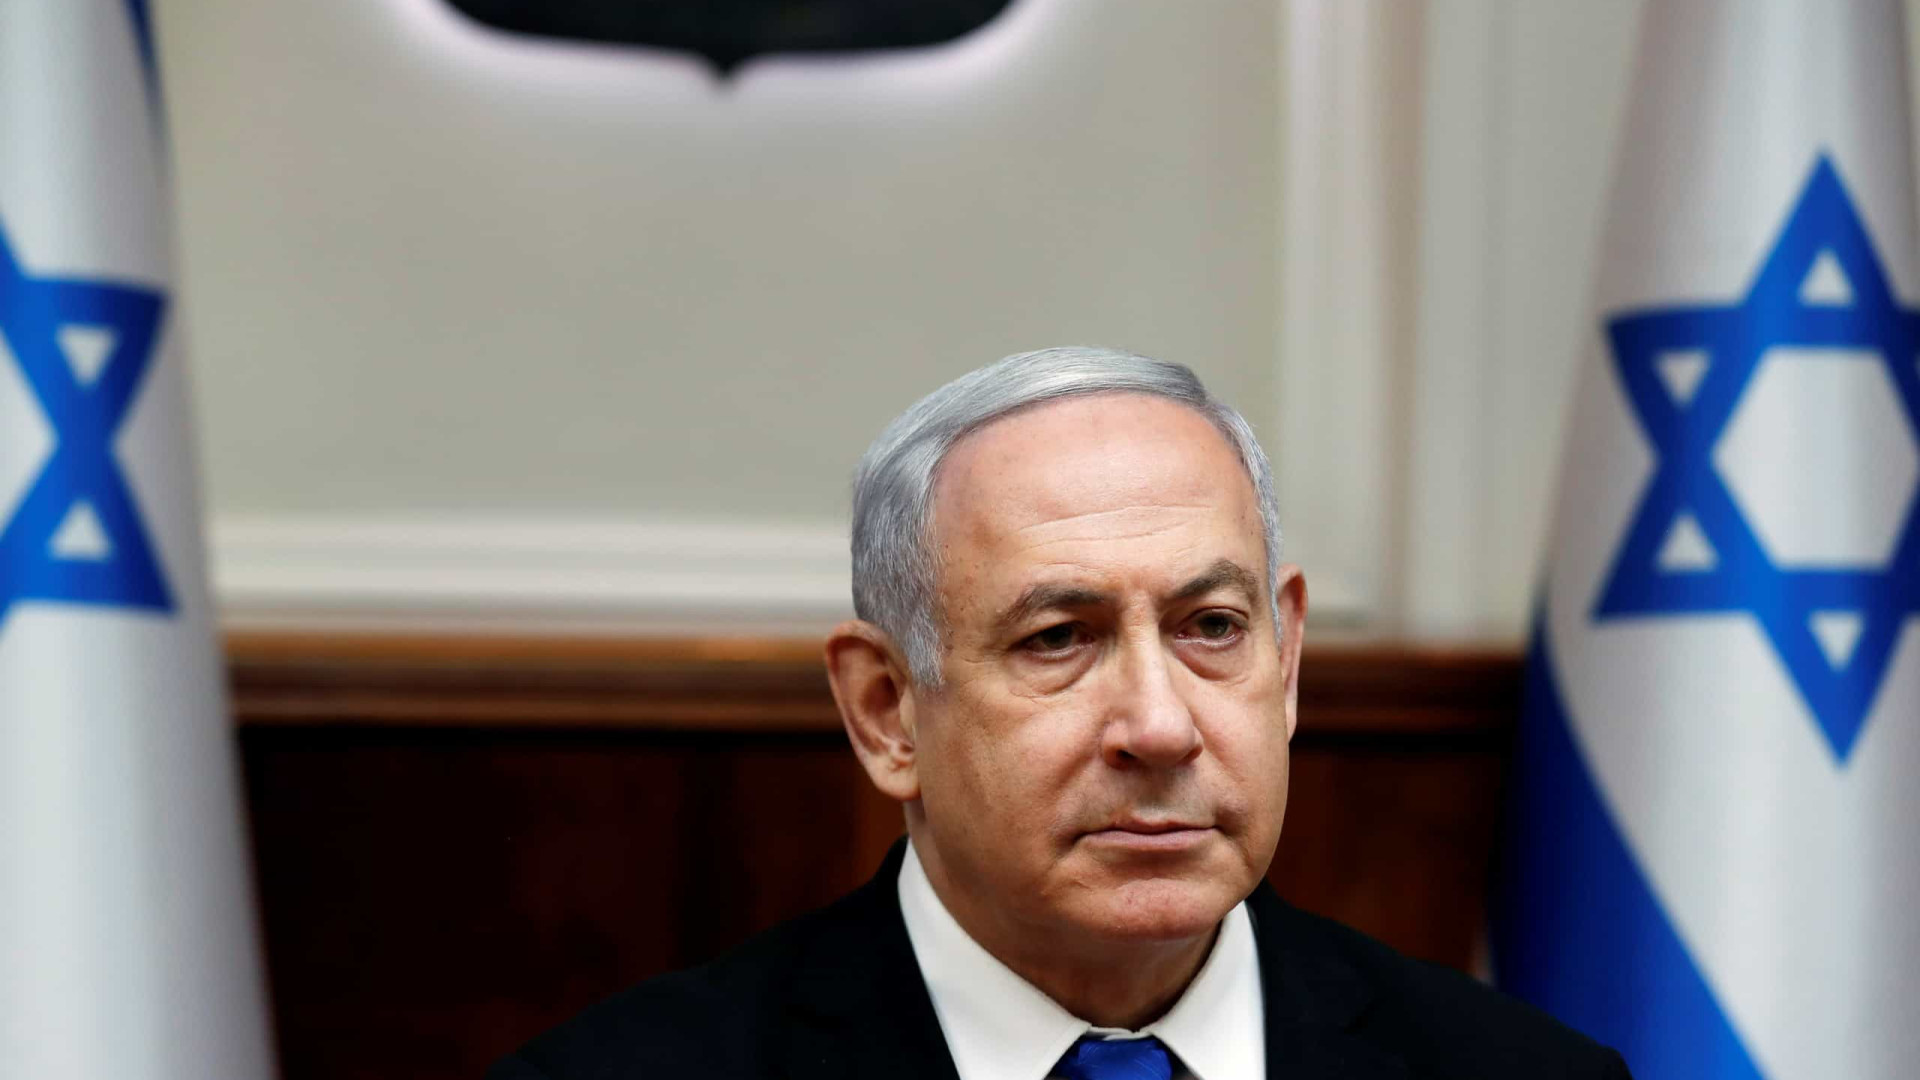 Parlamento de Israel aprova novo premiê e põe fim a era Netanyahu